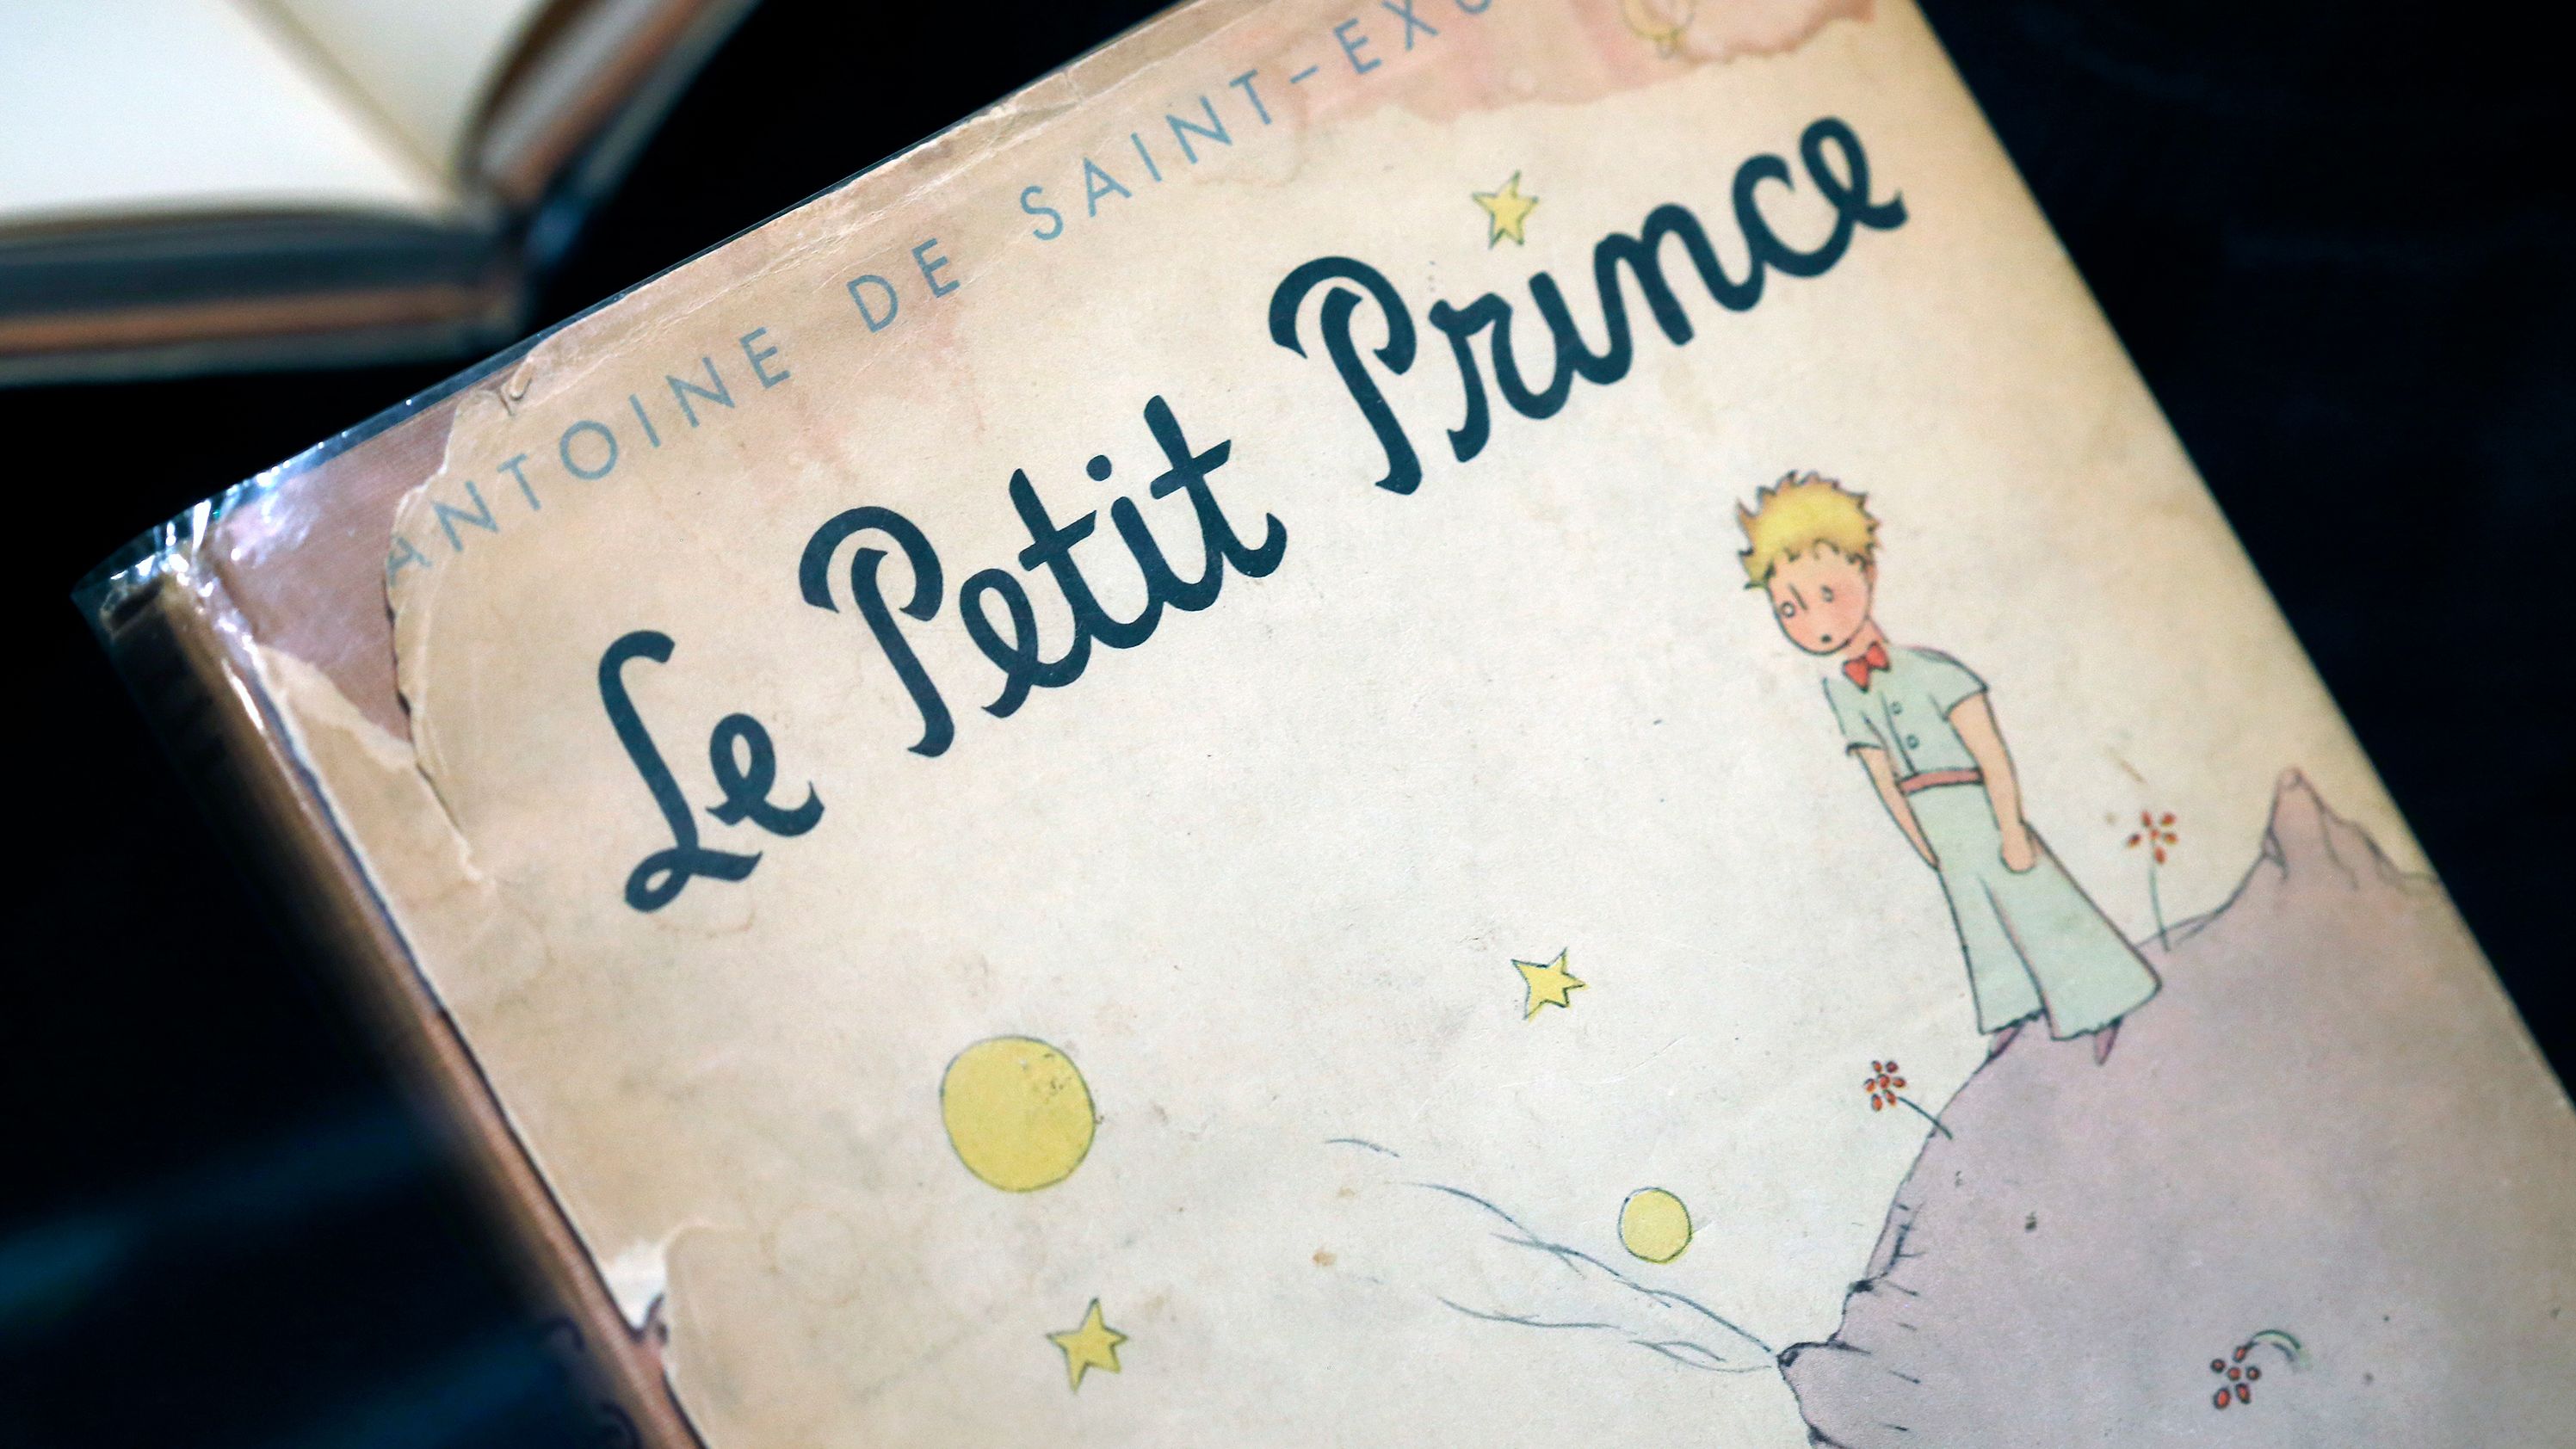 Paris exhibit brings 'The Little Prince' home